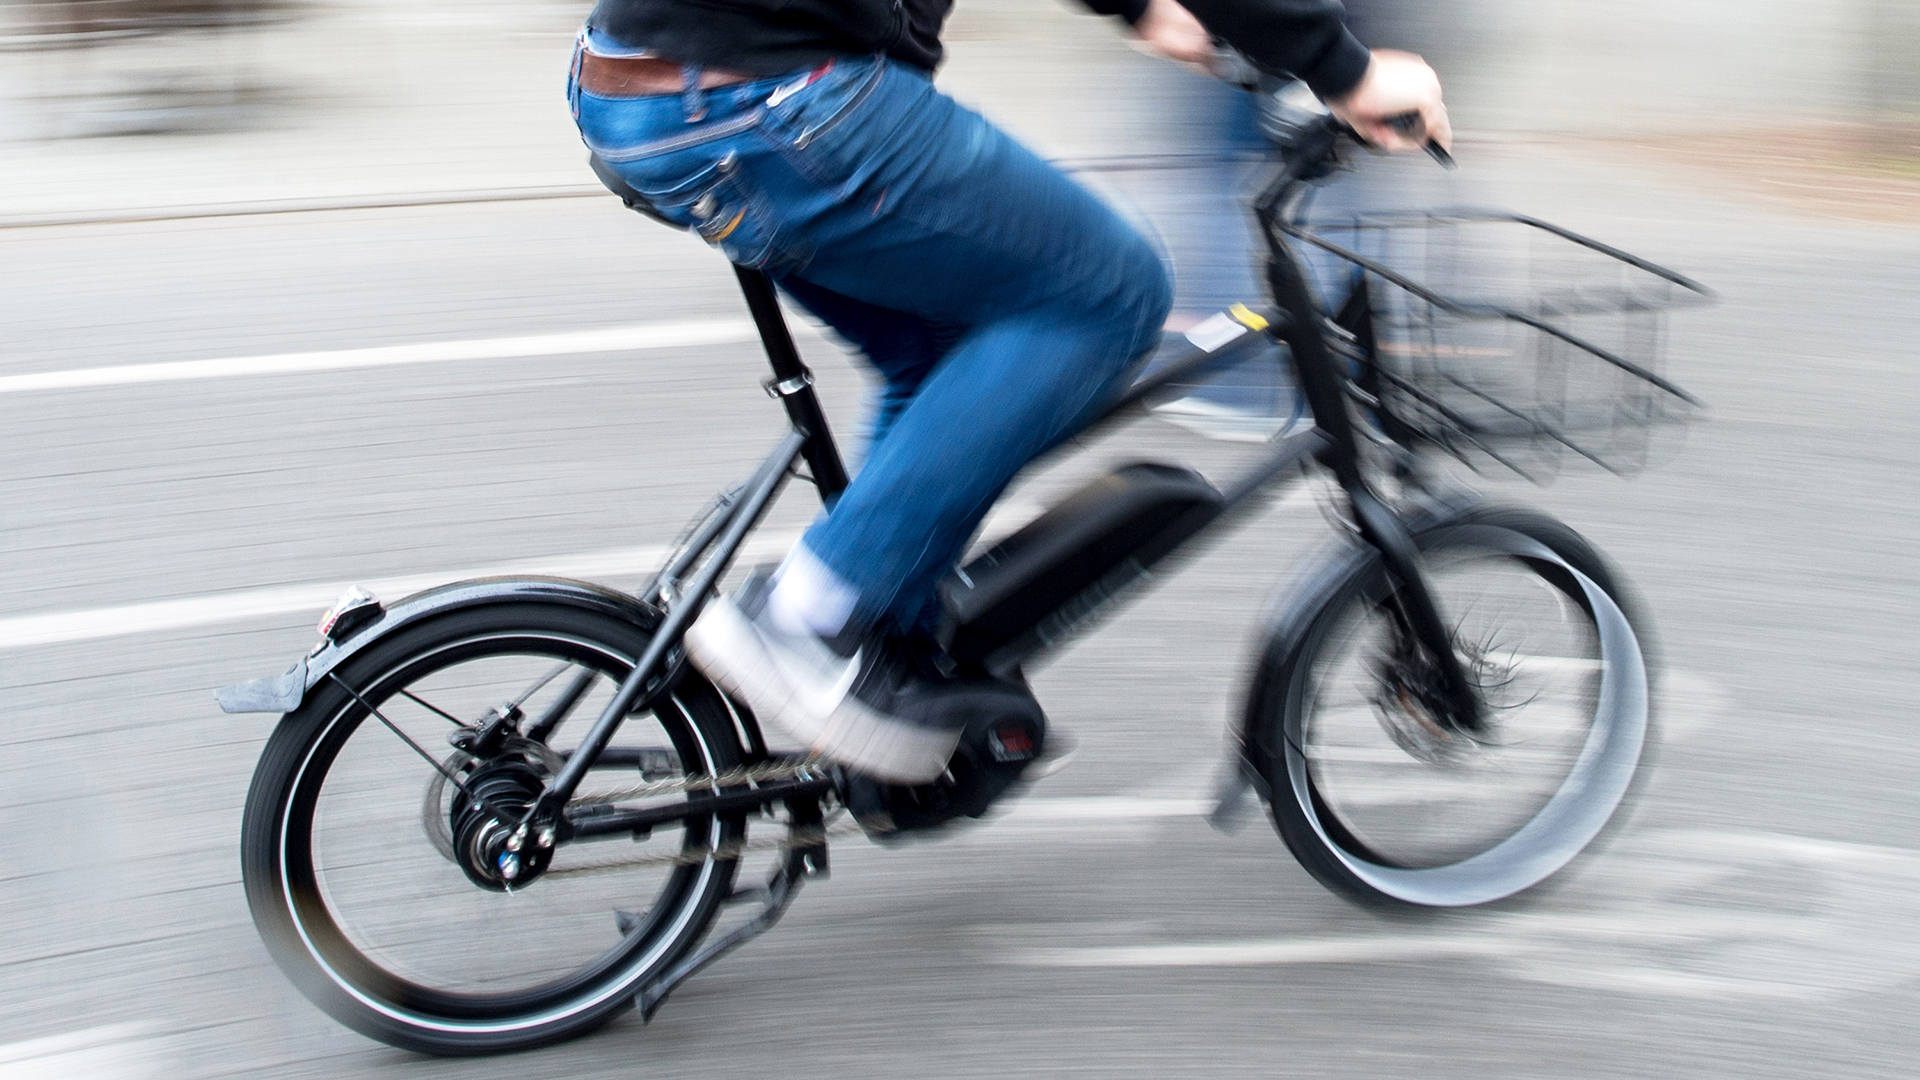 Fietsverhuur in Stockholm: met e-bikes om het verkeer te transformeren